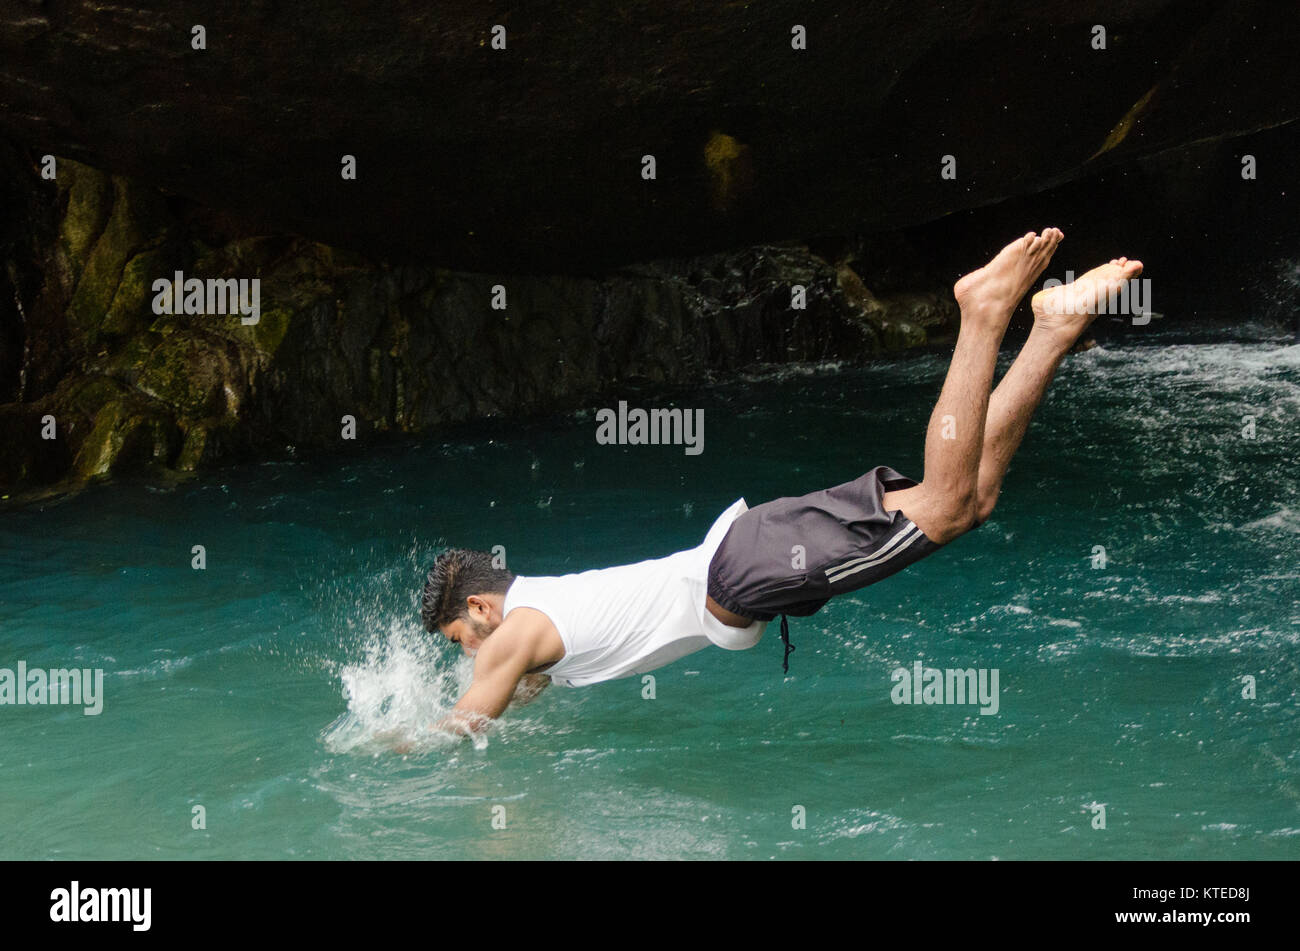 Boy diving head first into cool blue waters, creating a splash at Nagarmadi Water Falls, Chendia, Karnataka, India. Stock Photo